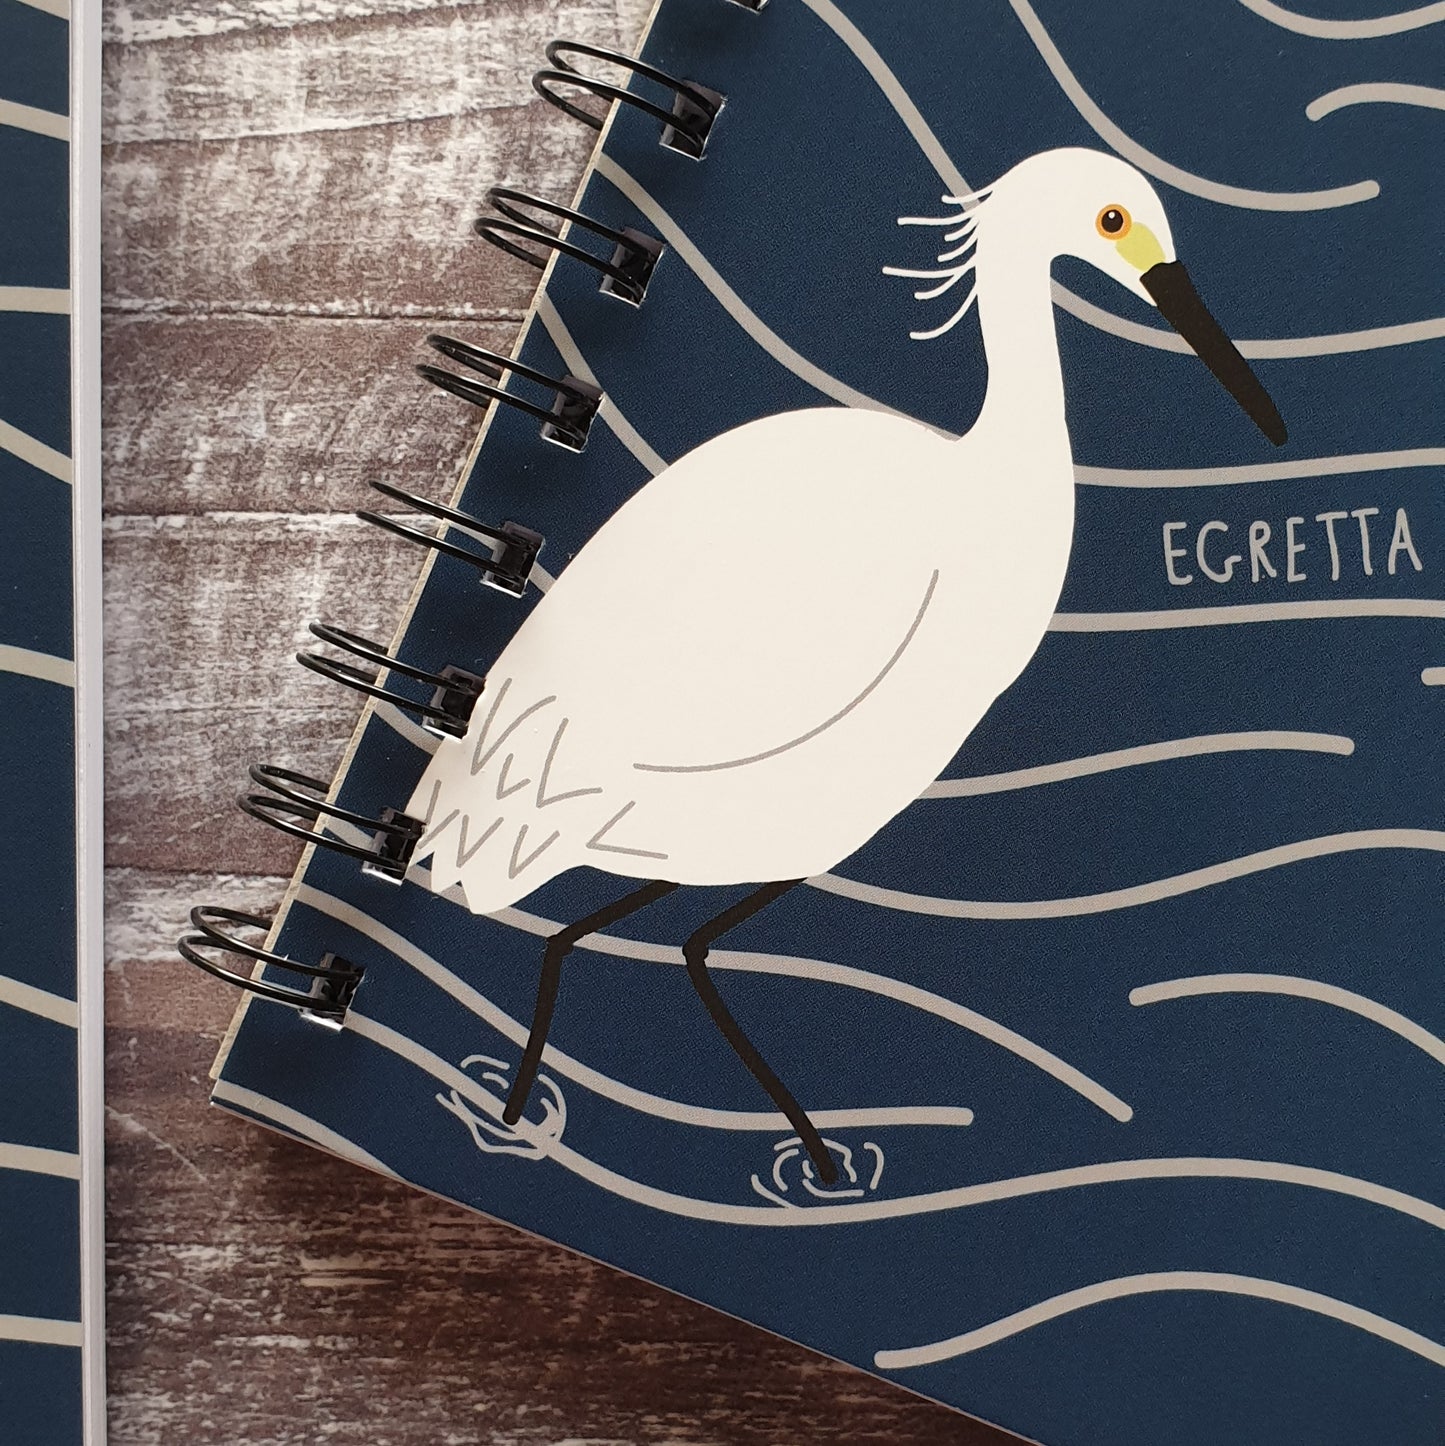 Little Egret Notebooks